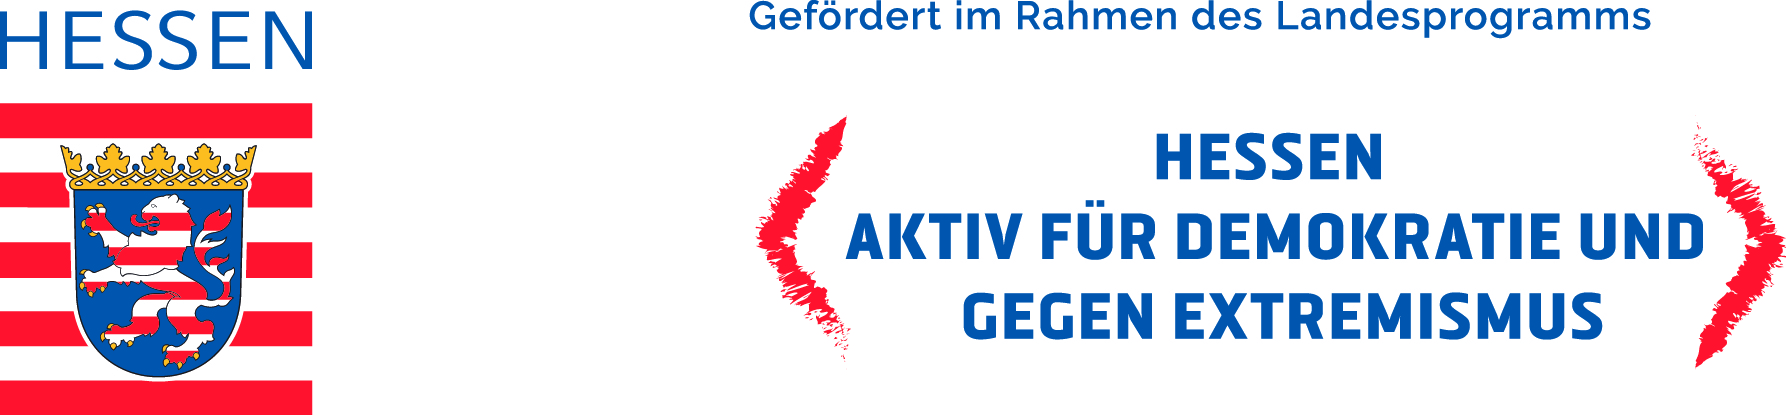 Logo Hessen Aktiv für Demokratie und gegen Extremismus